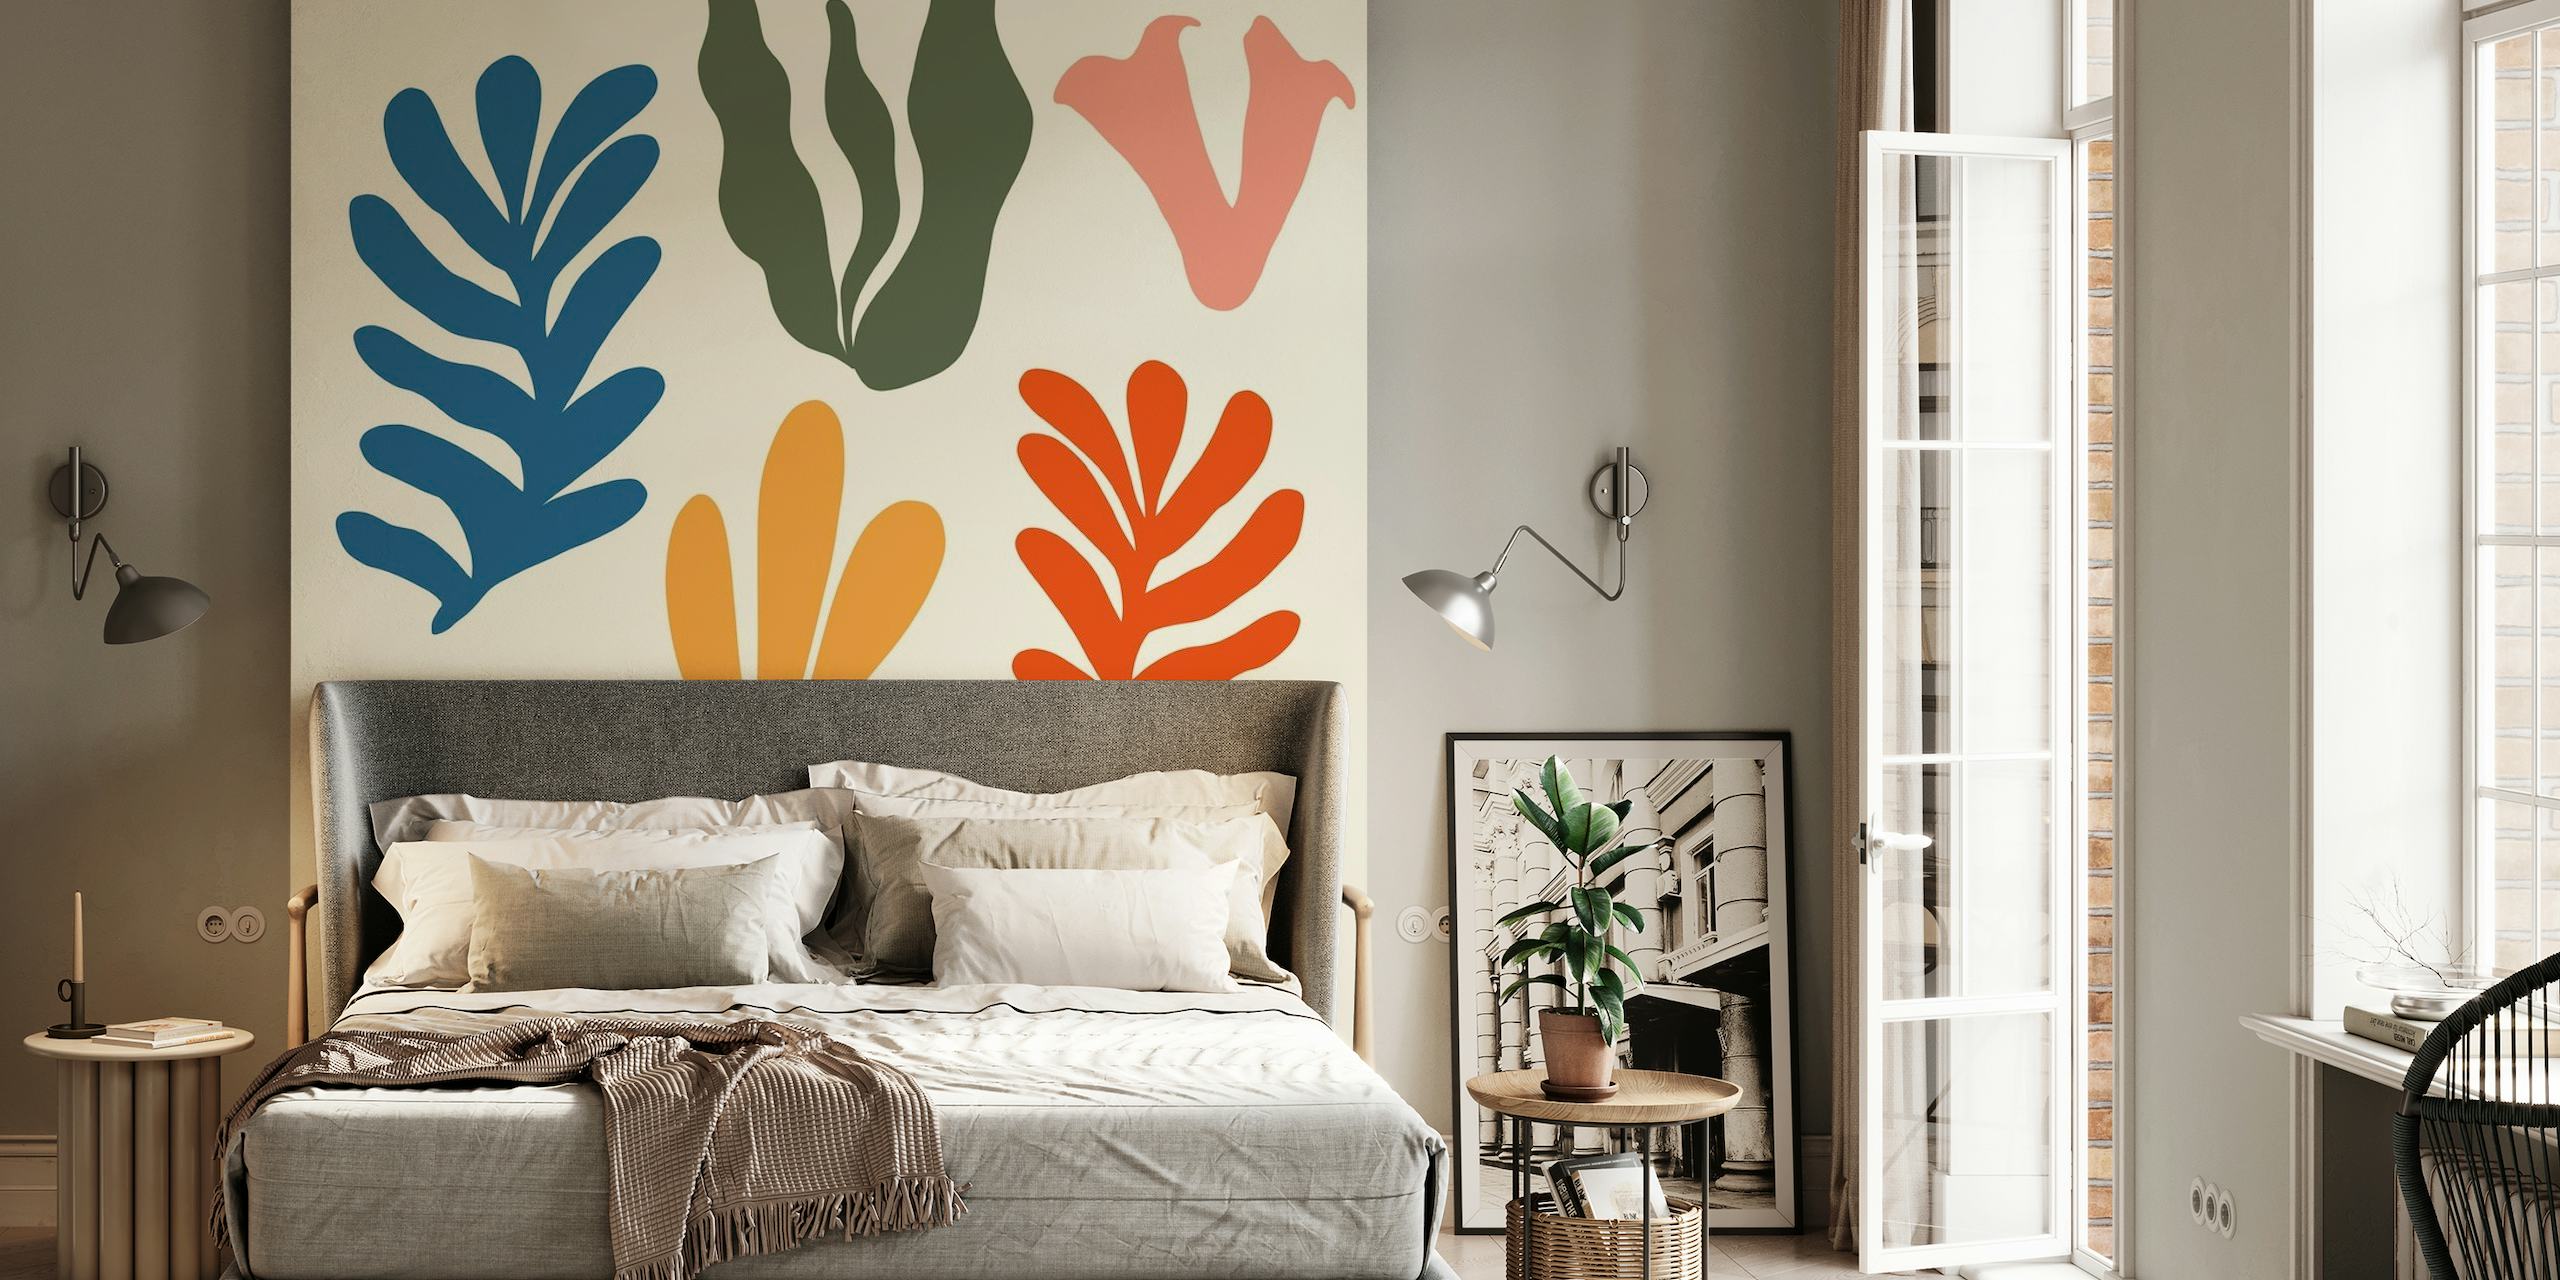 Stilisert abstrakt sjøgress-veggmaleri med en rekke fargerike former på en nøytral bakgrunn